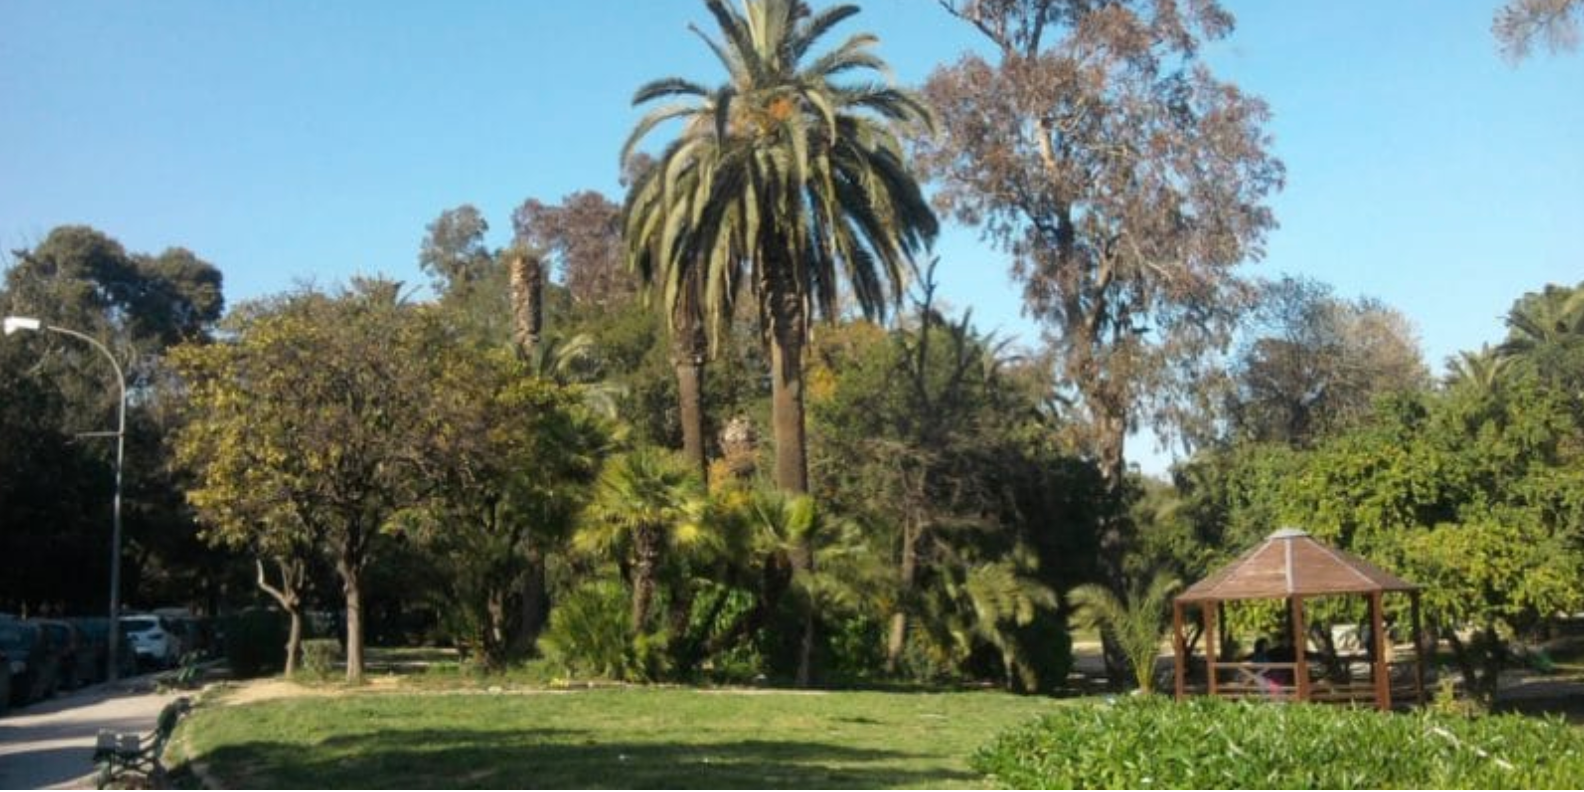 L’UE et SiccaVeneria lancent la réhabilitation du parc du Belvédère à Tunis